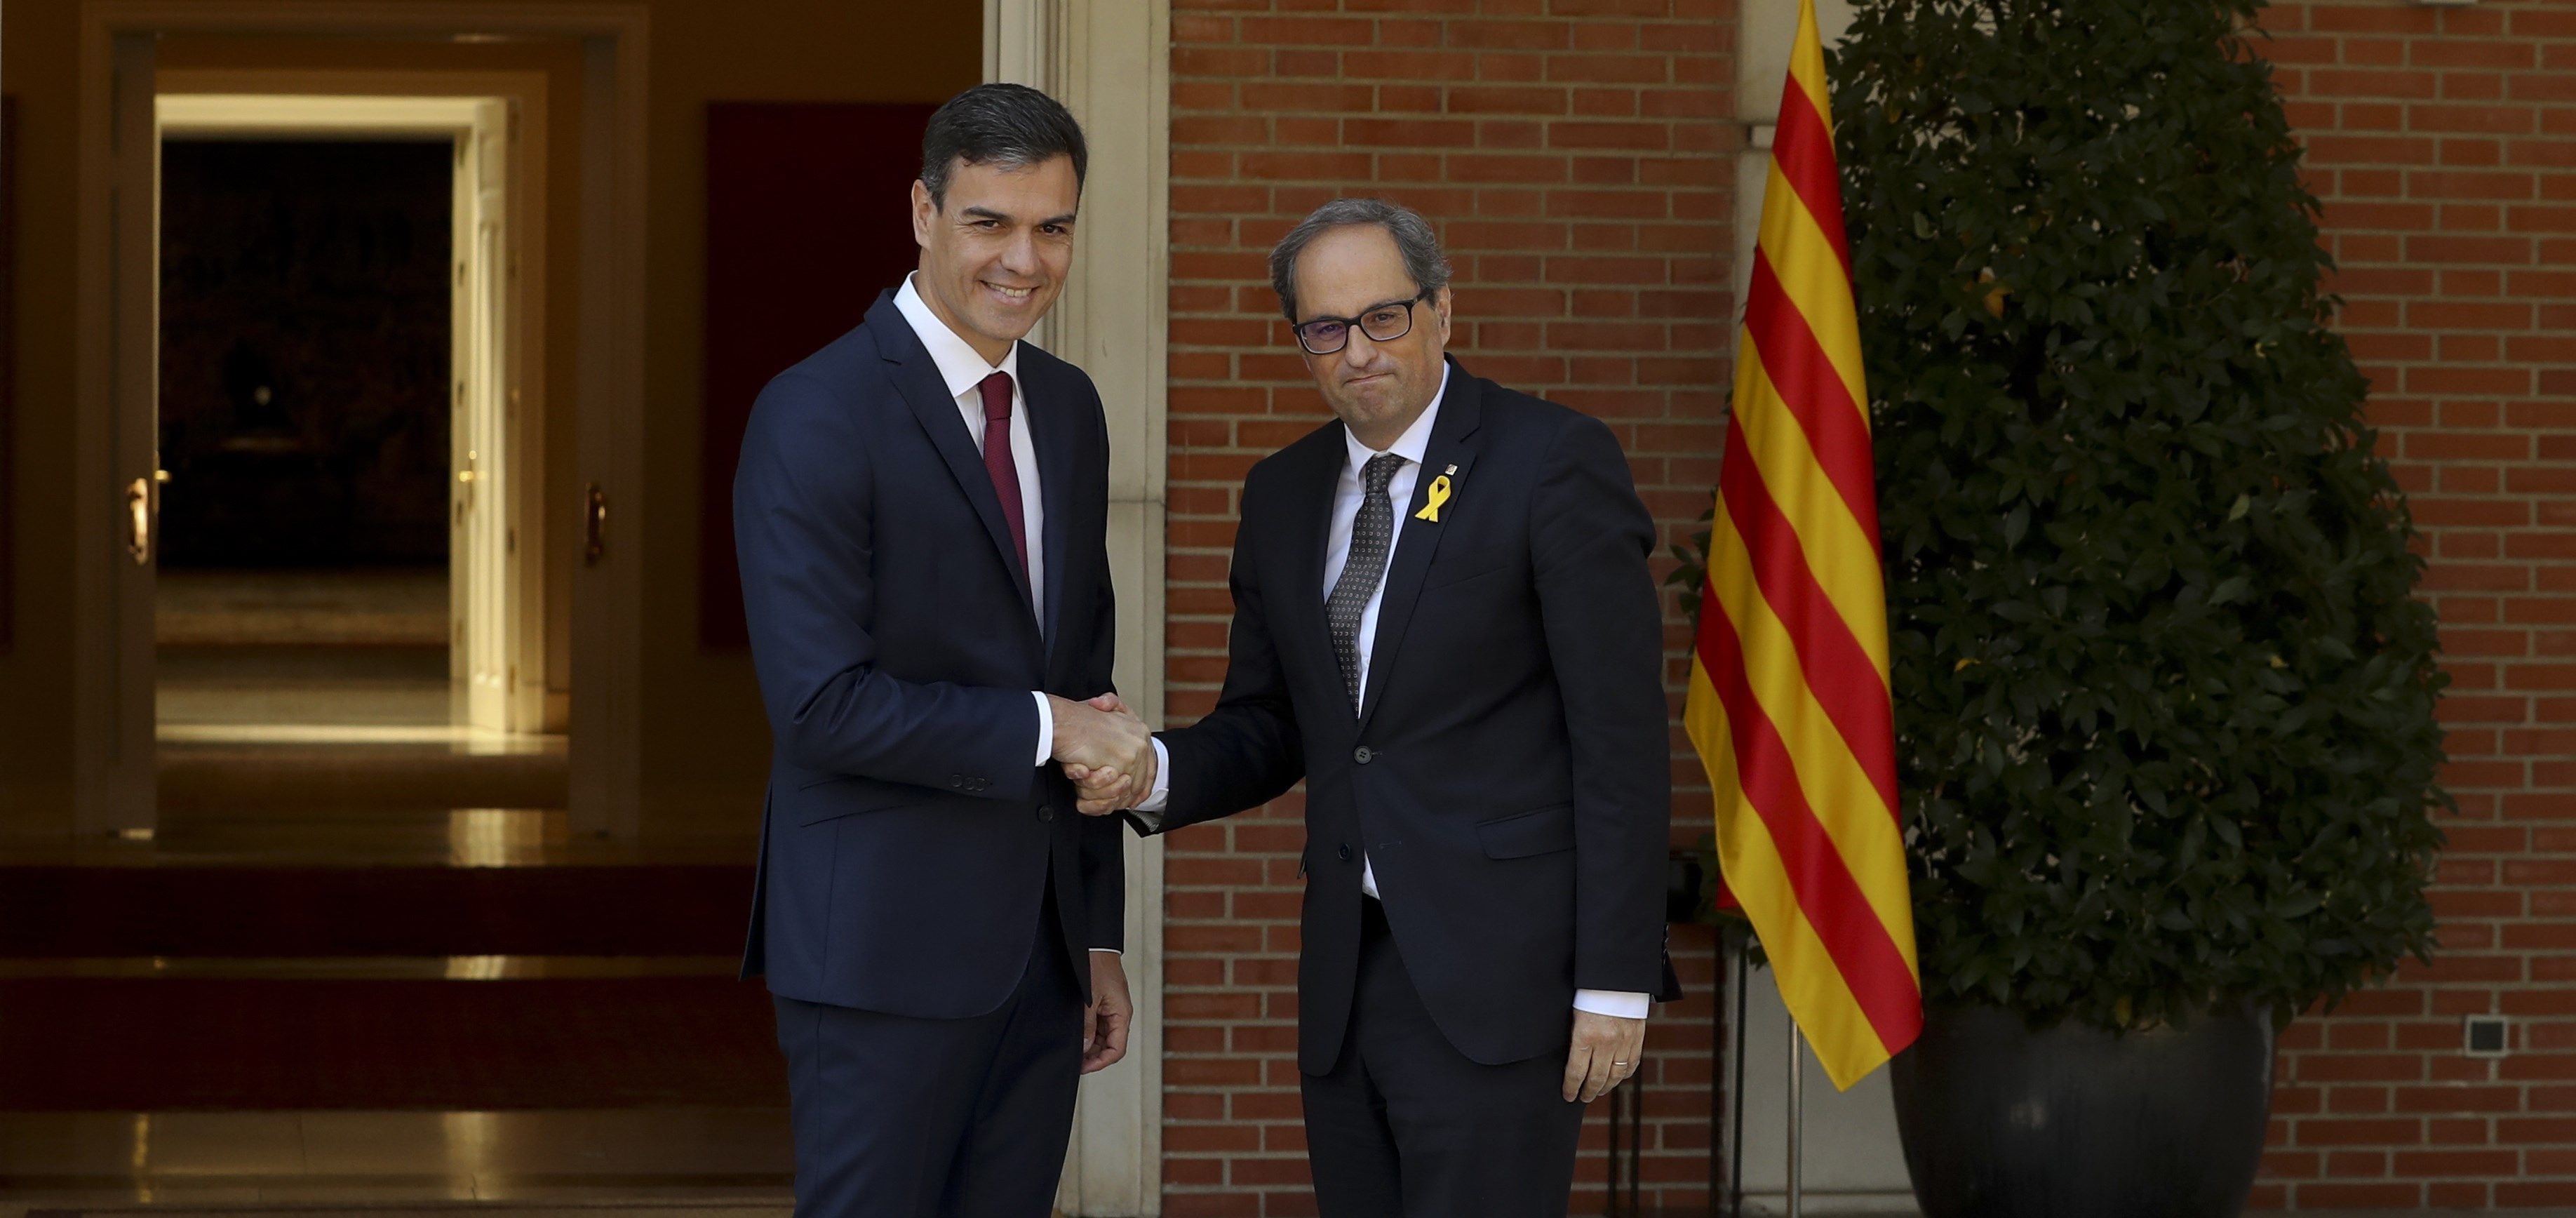 Fracassa l'intent de reunió entre Torra i Sánchez a Barcelona